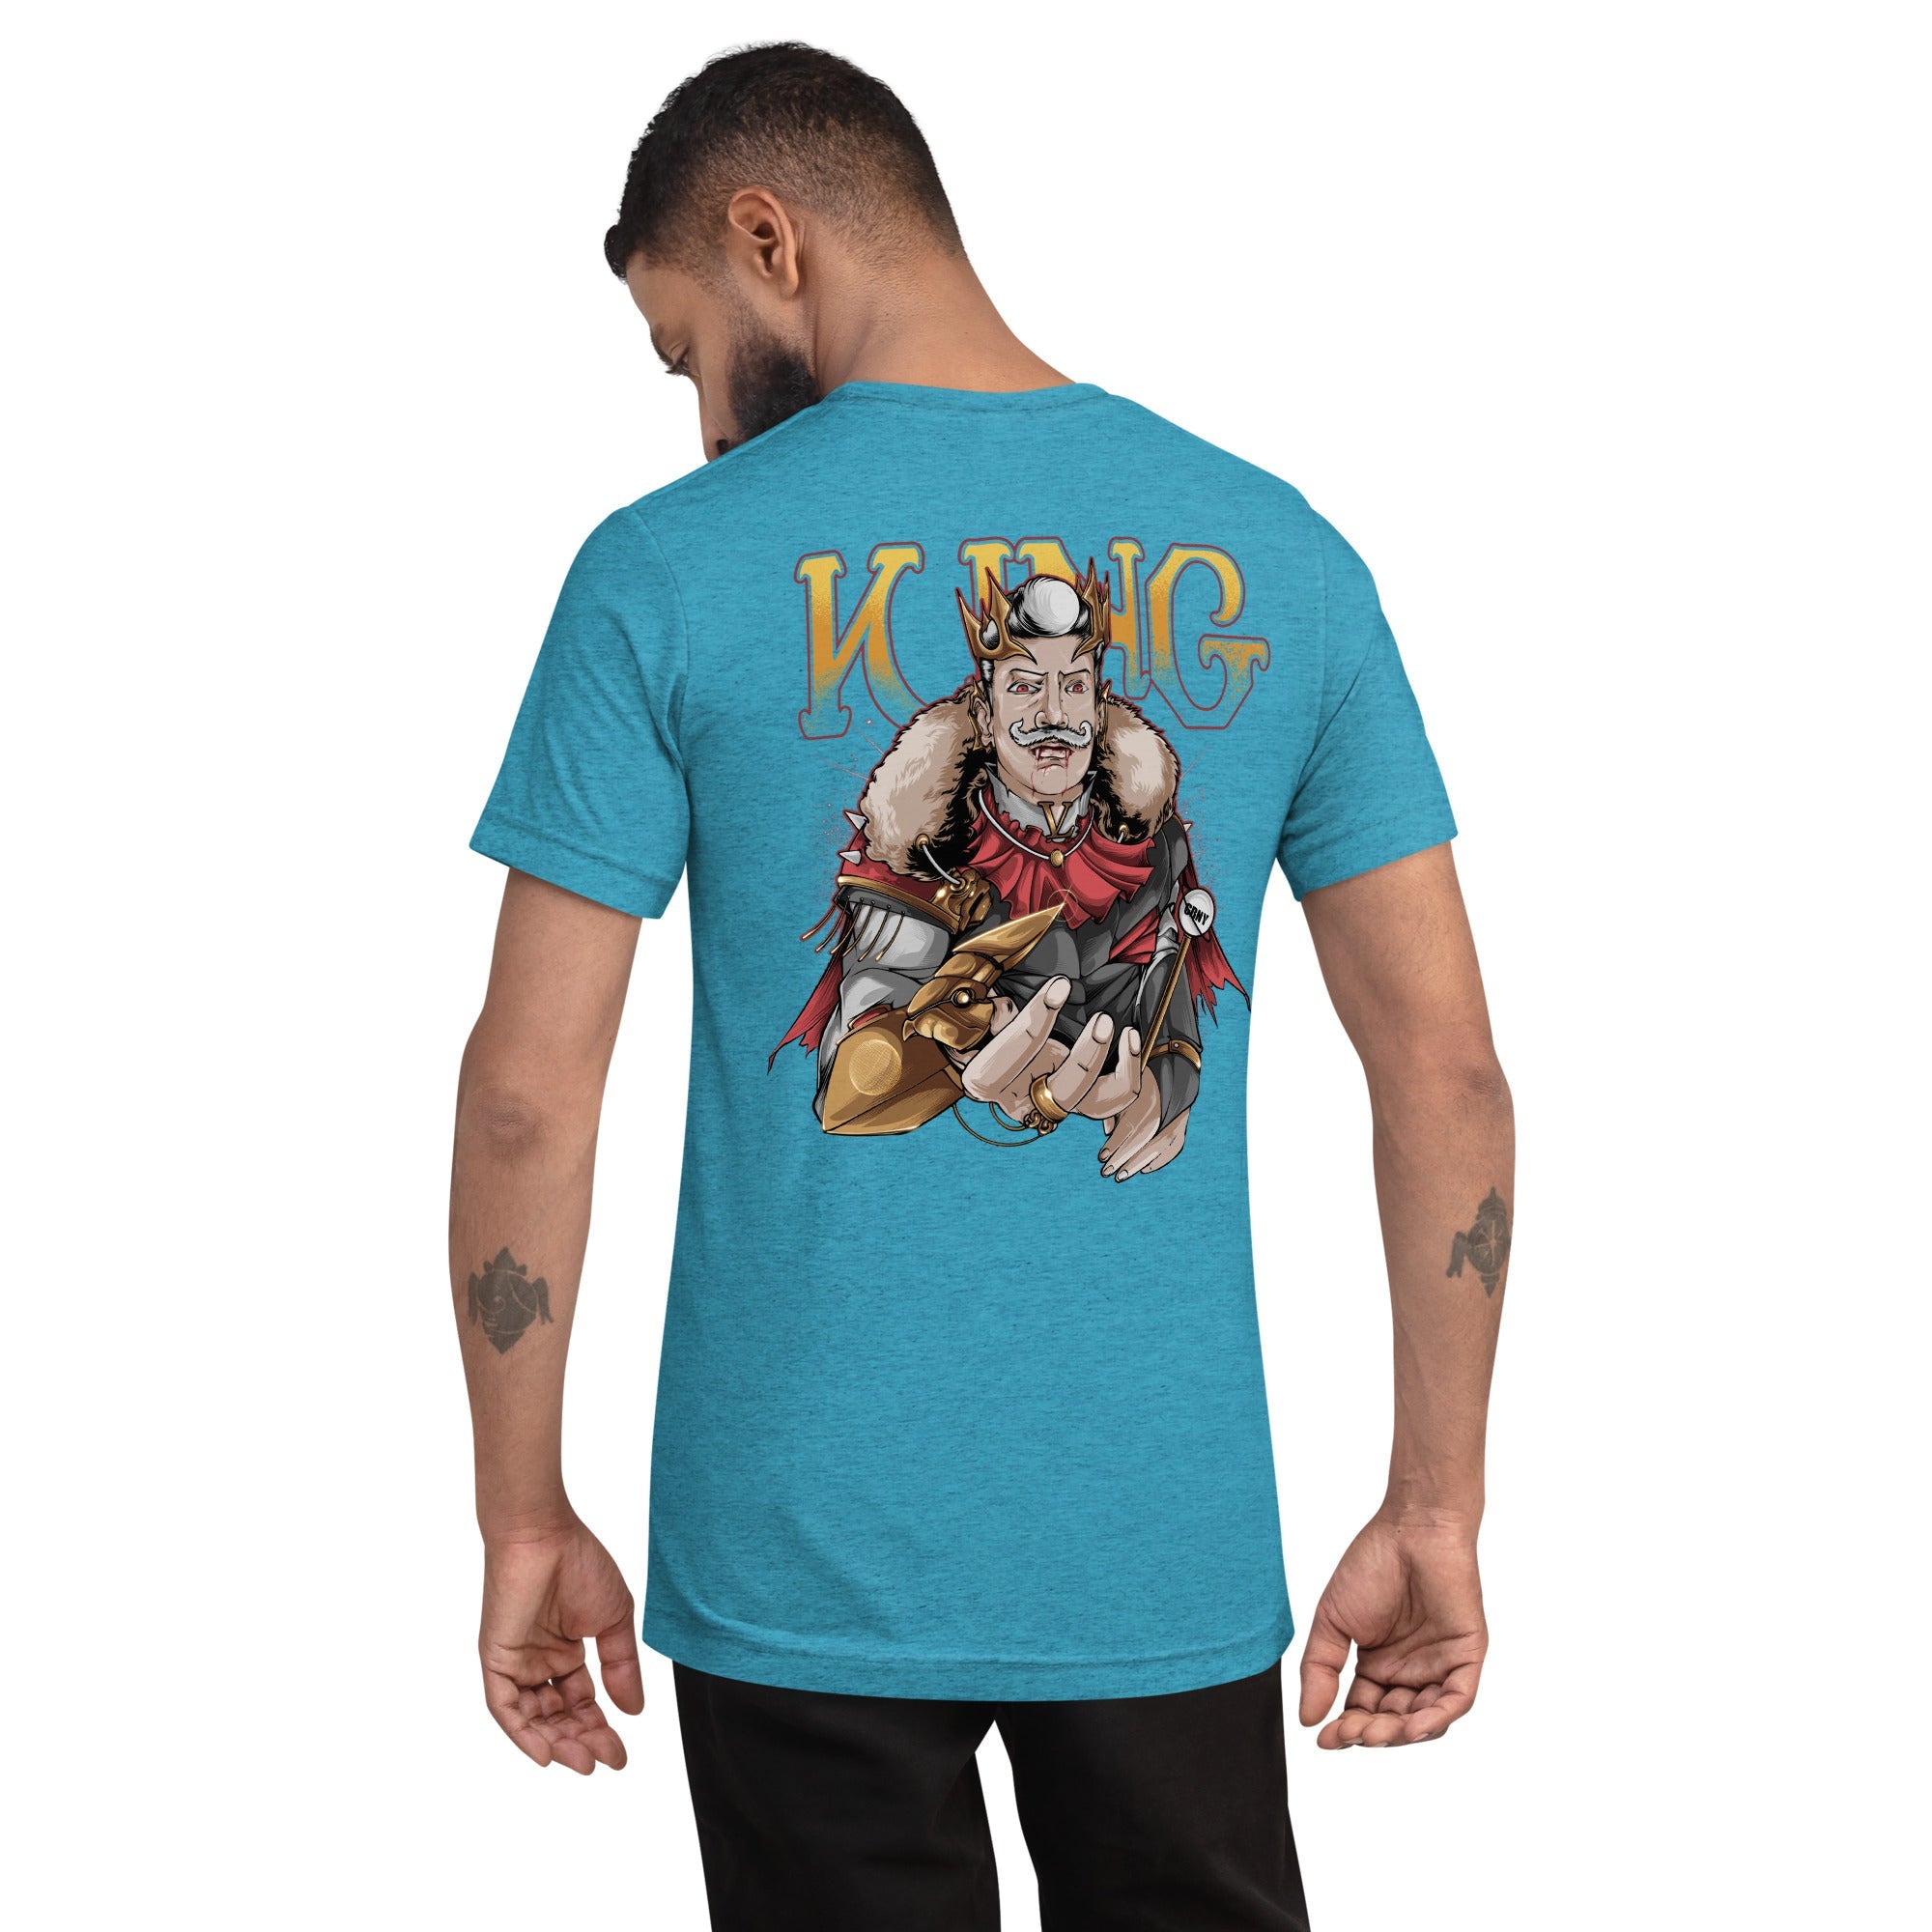 GBNY Aqua Triblend / XS Vamp Life X GBNY "Vamp King" T-shirt - Men's 8741511_6464